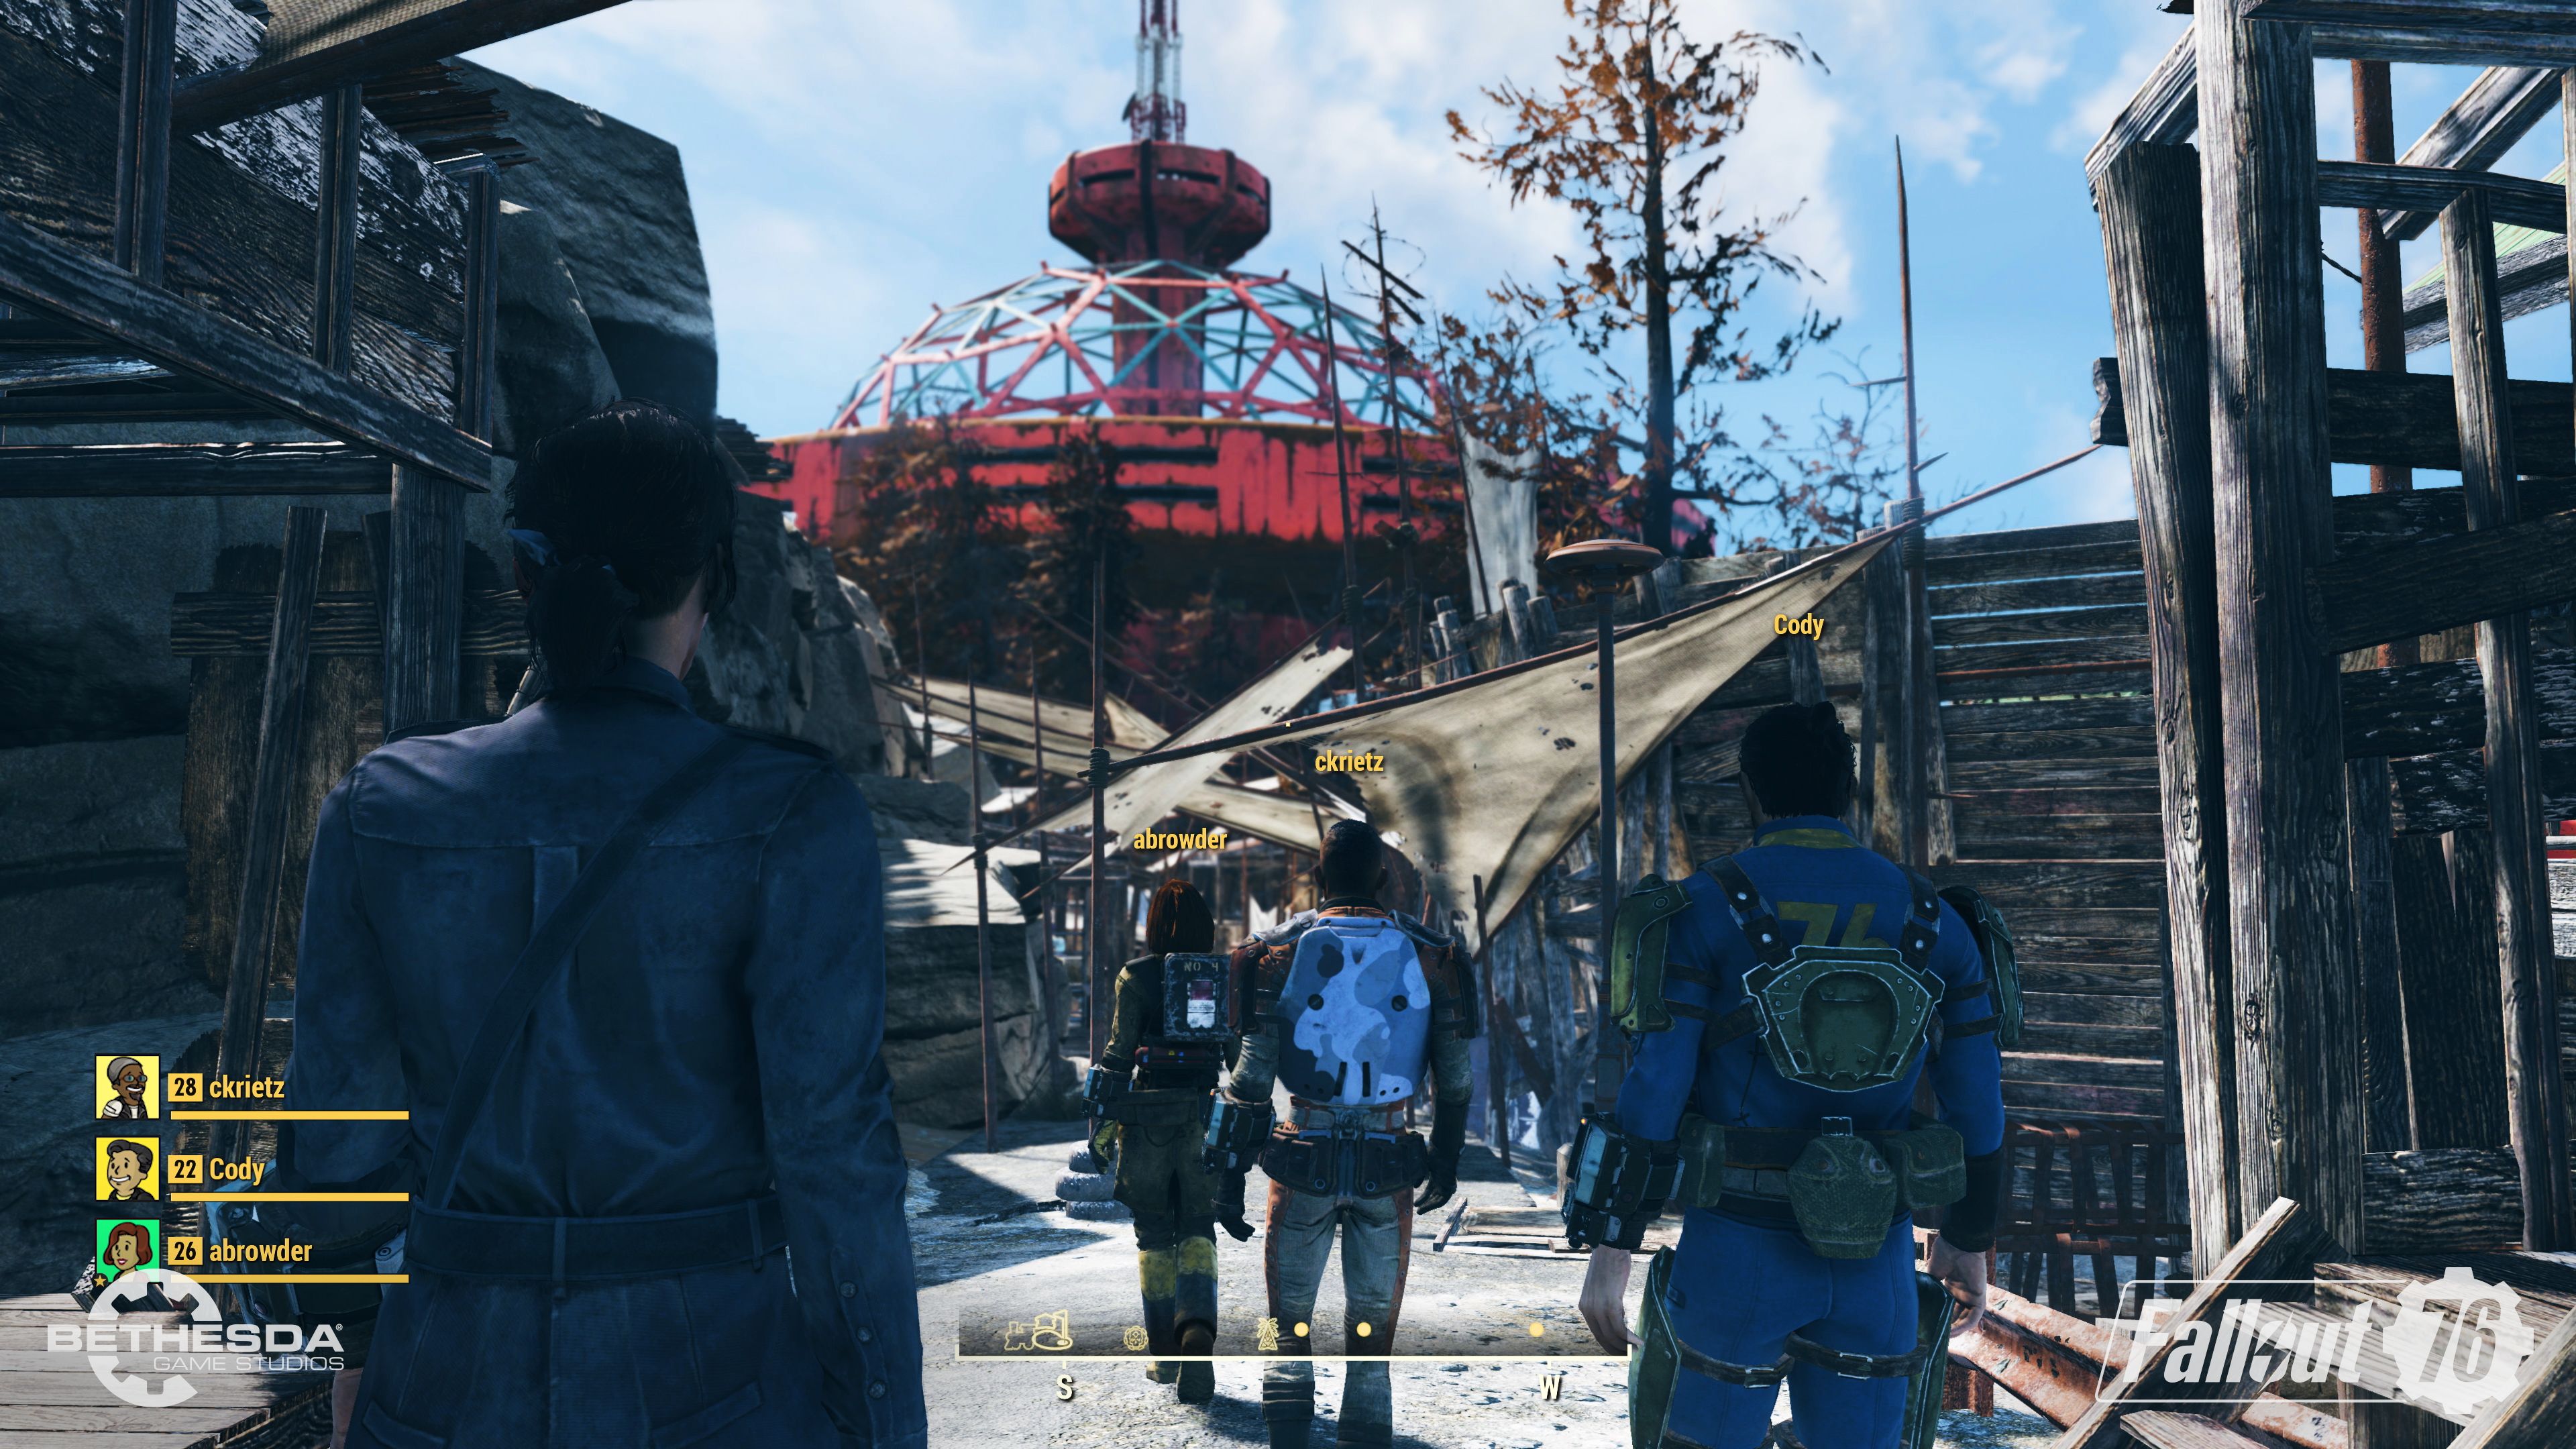 Bethesda confirma que el contenido descargable de Fallout 76 será gratuito